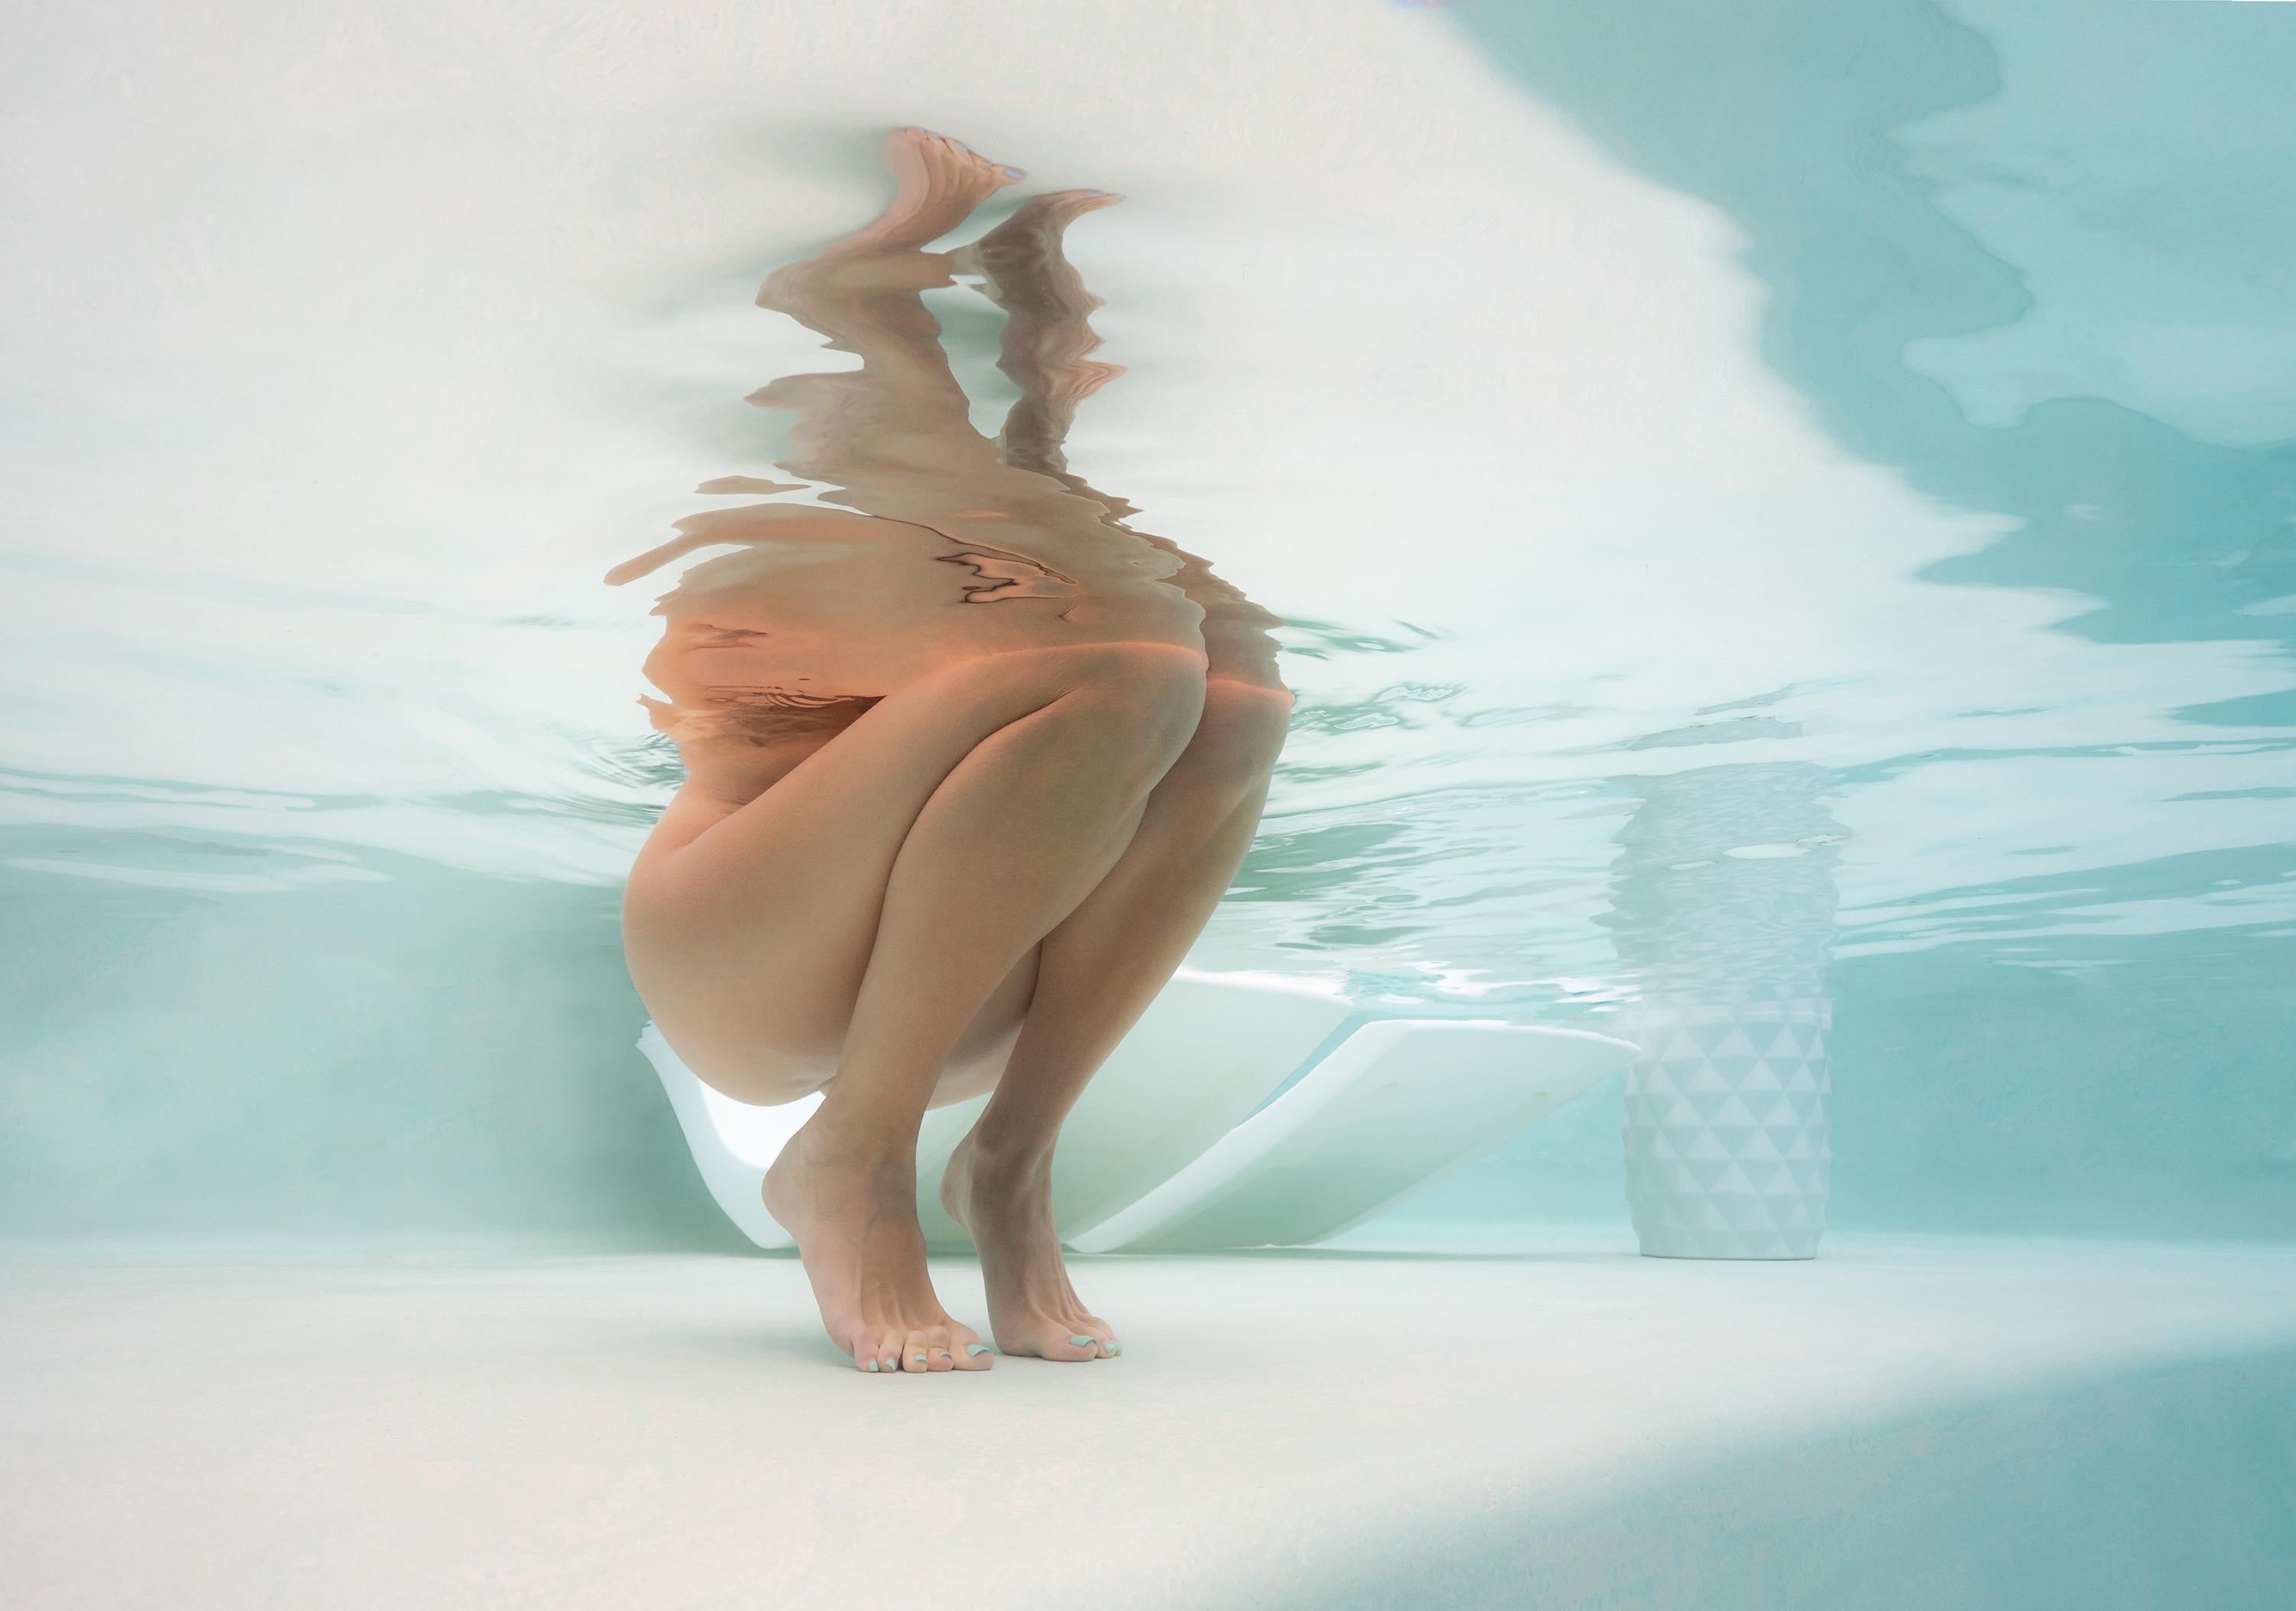 Alex Sher Figurative Photograph - Pristine - underwater nude photograph - archival pigment print 43" х 61"